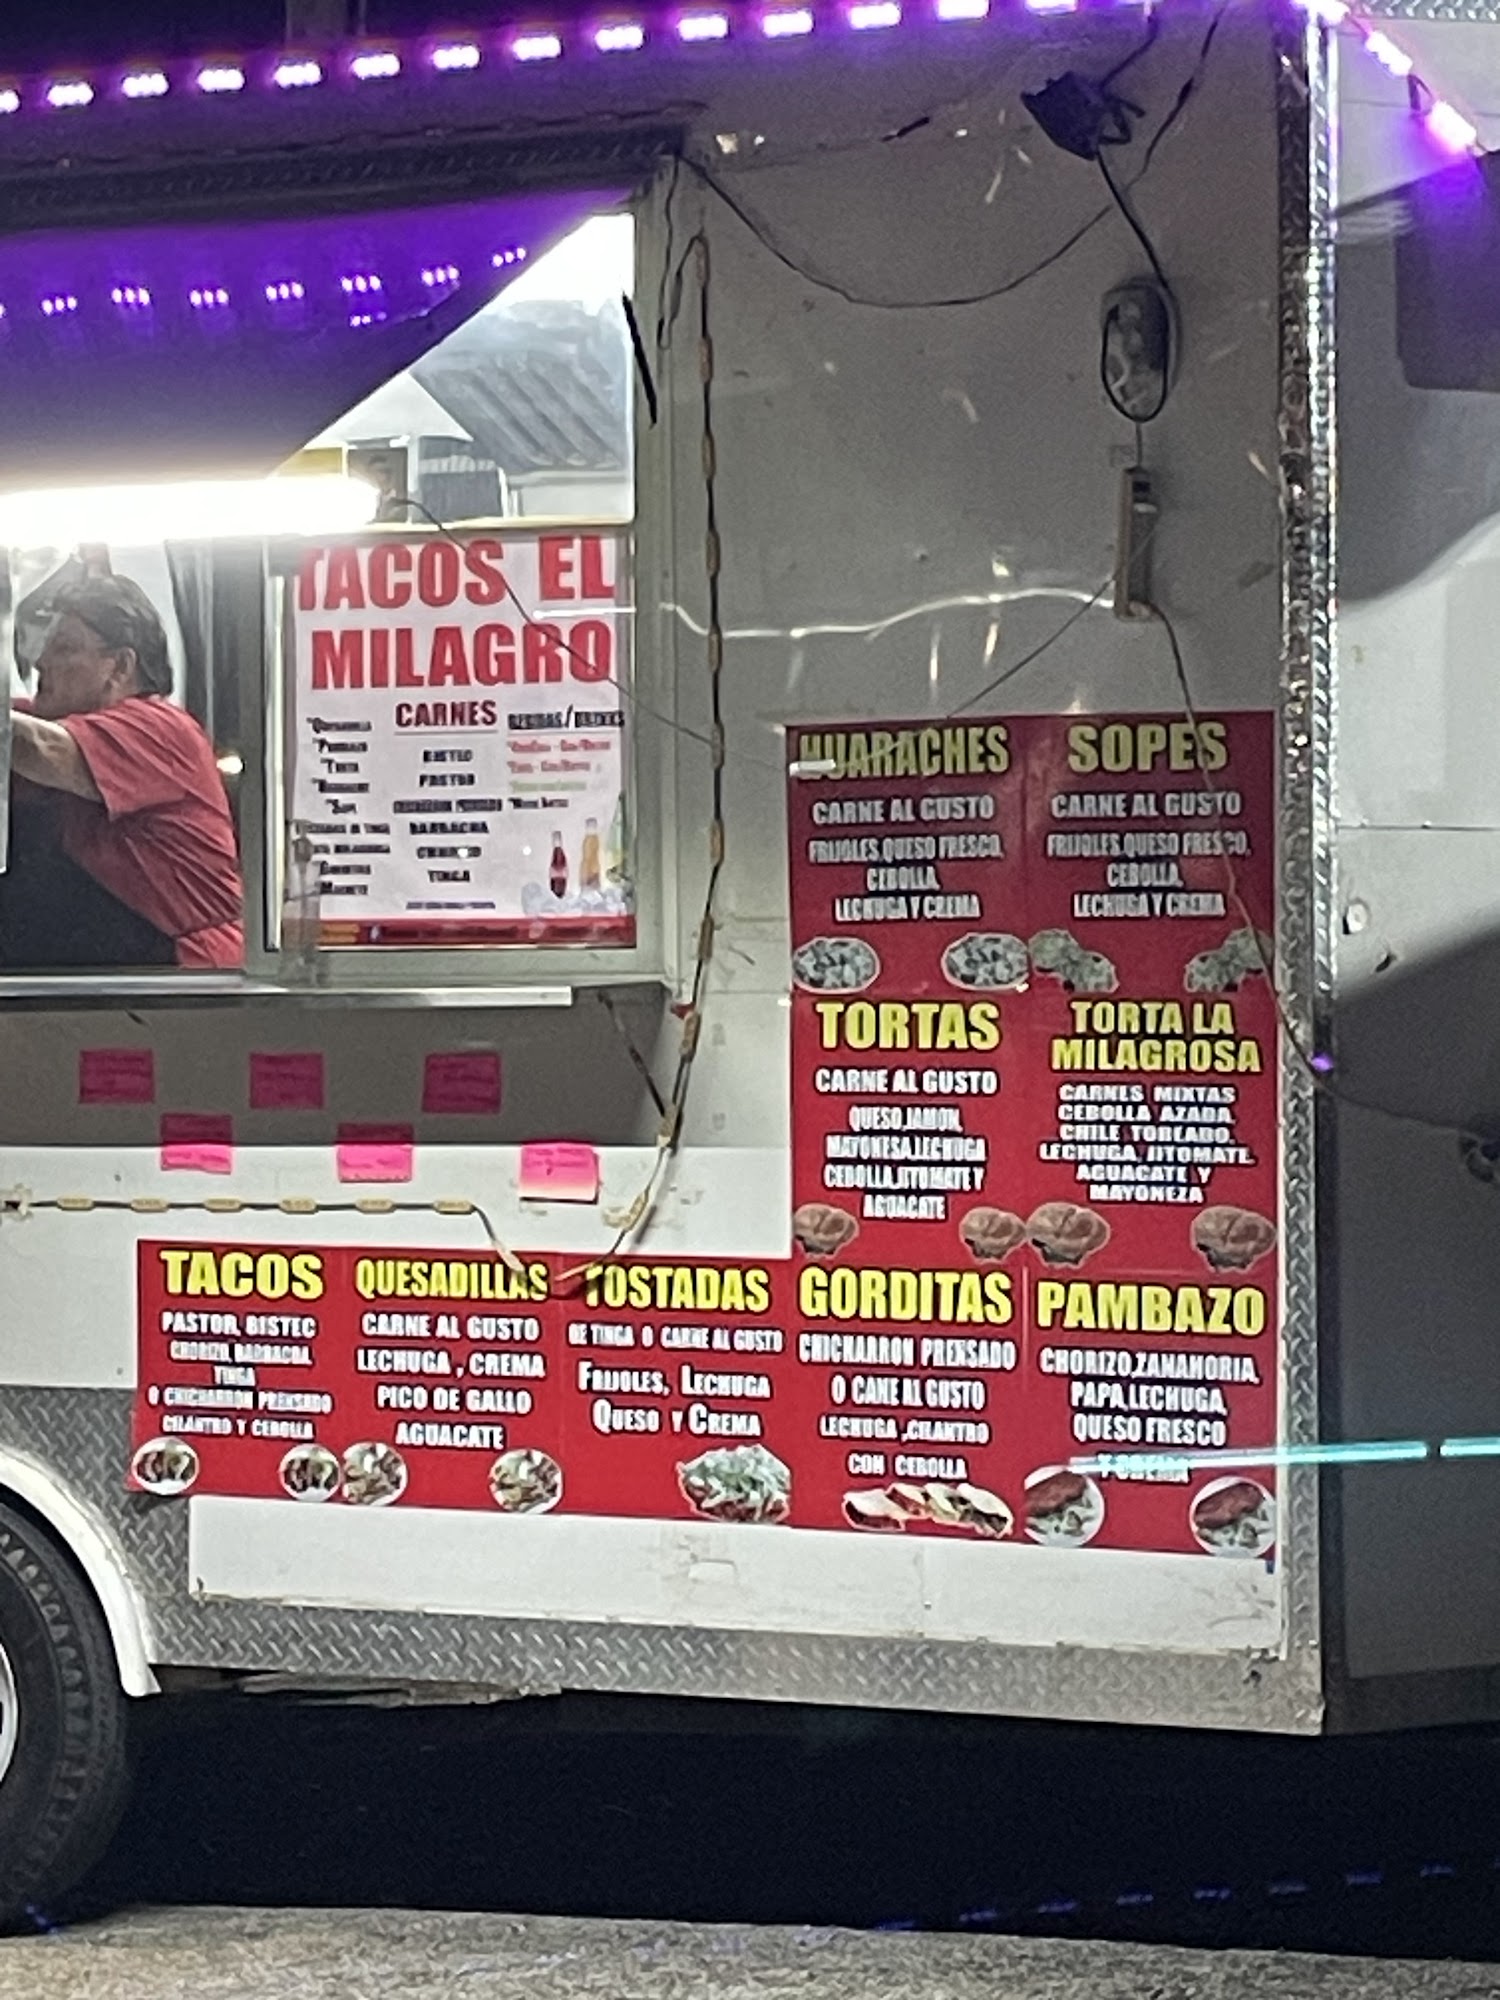 Tacos El Milagro 4020 Hemphill St, Fort Worth, TX 76110